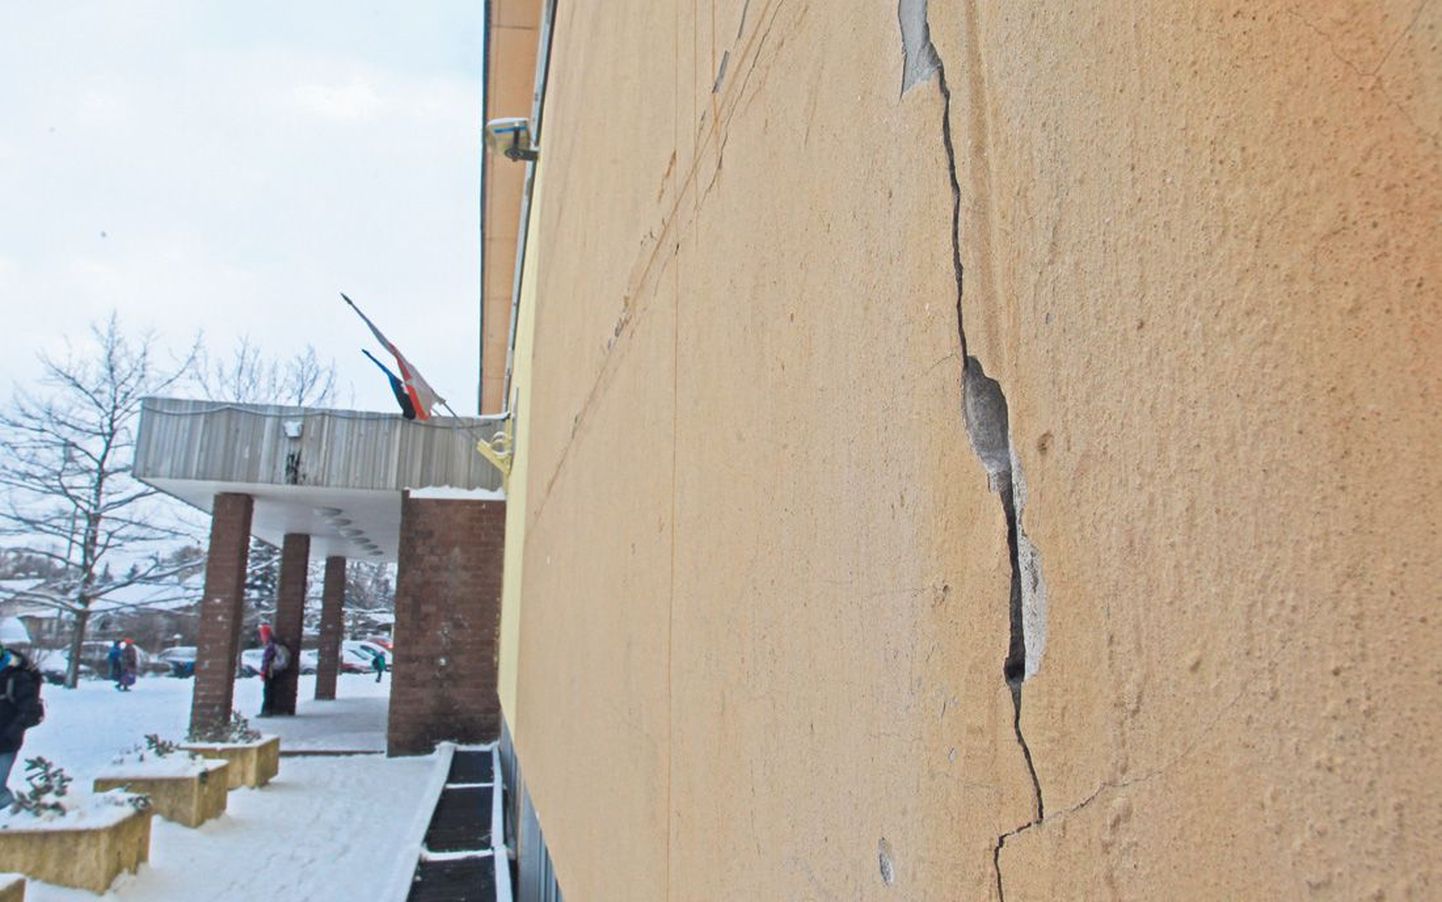 Hansa kooli fassaad lausa karjub remondi järele, kuid Tartu linnal selleks raha ei ole.